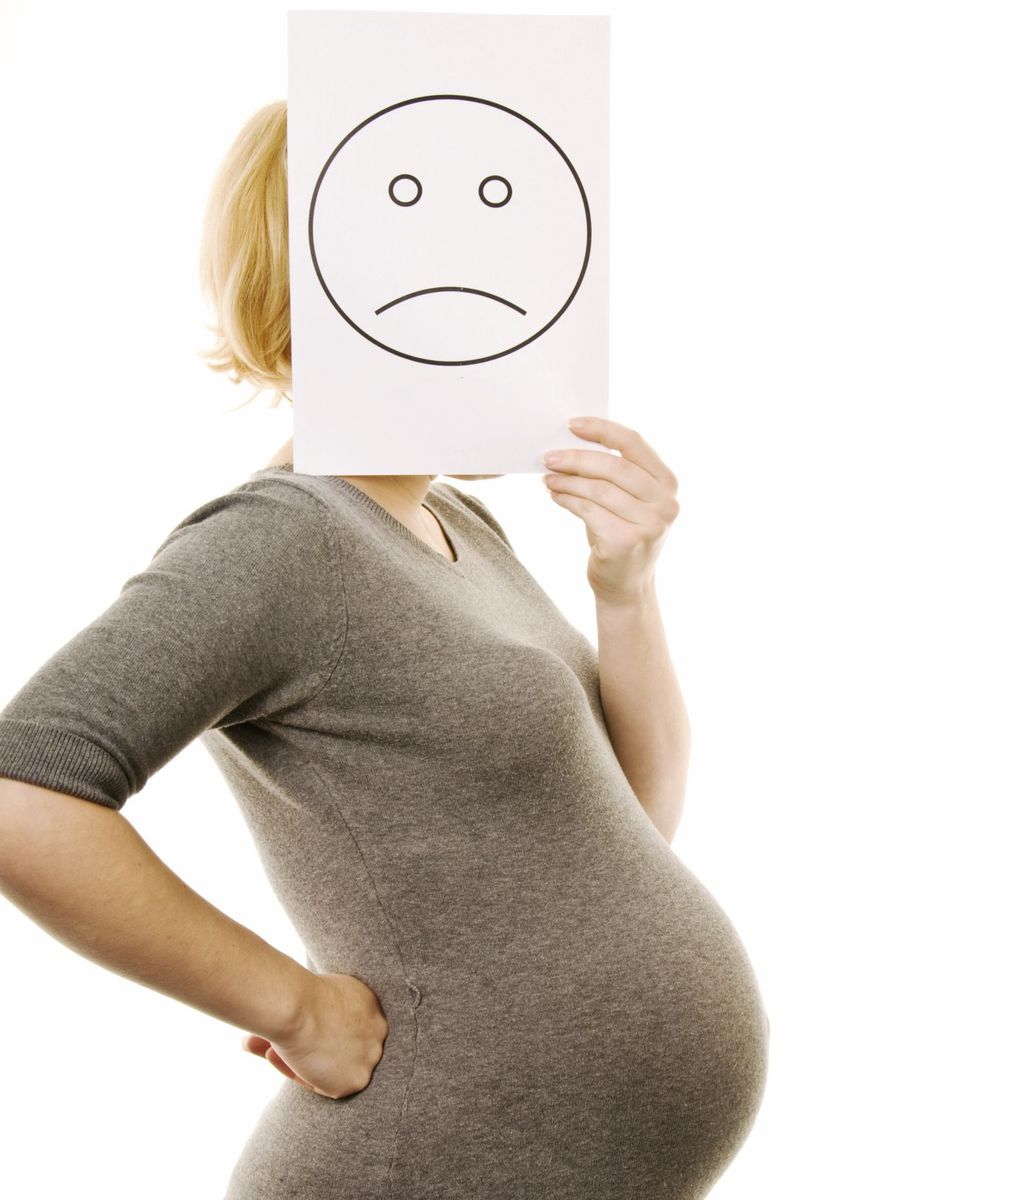 رژیم کتوژنیک در بارداری نی نی سایت